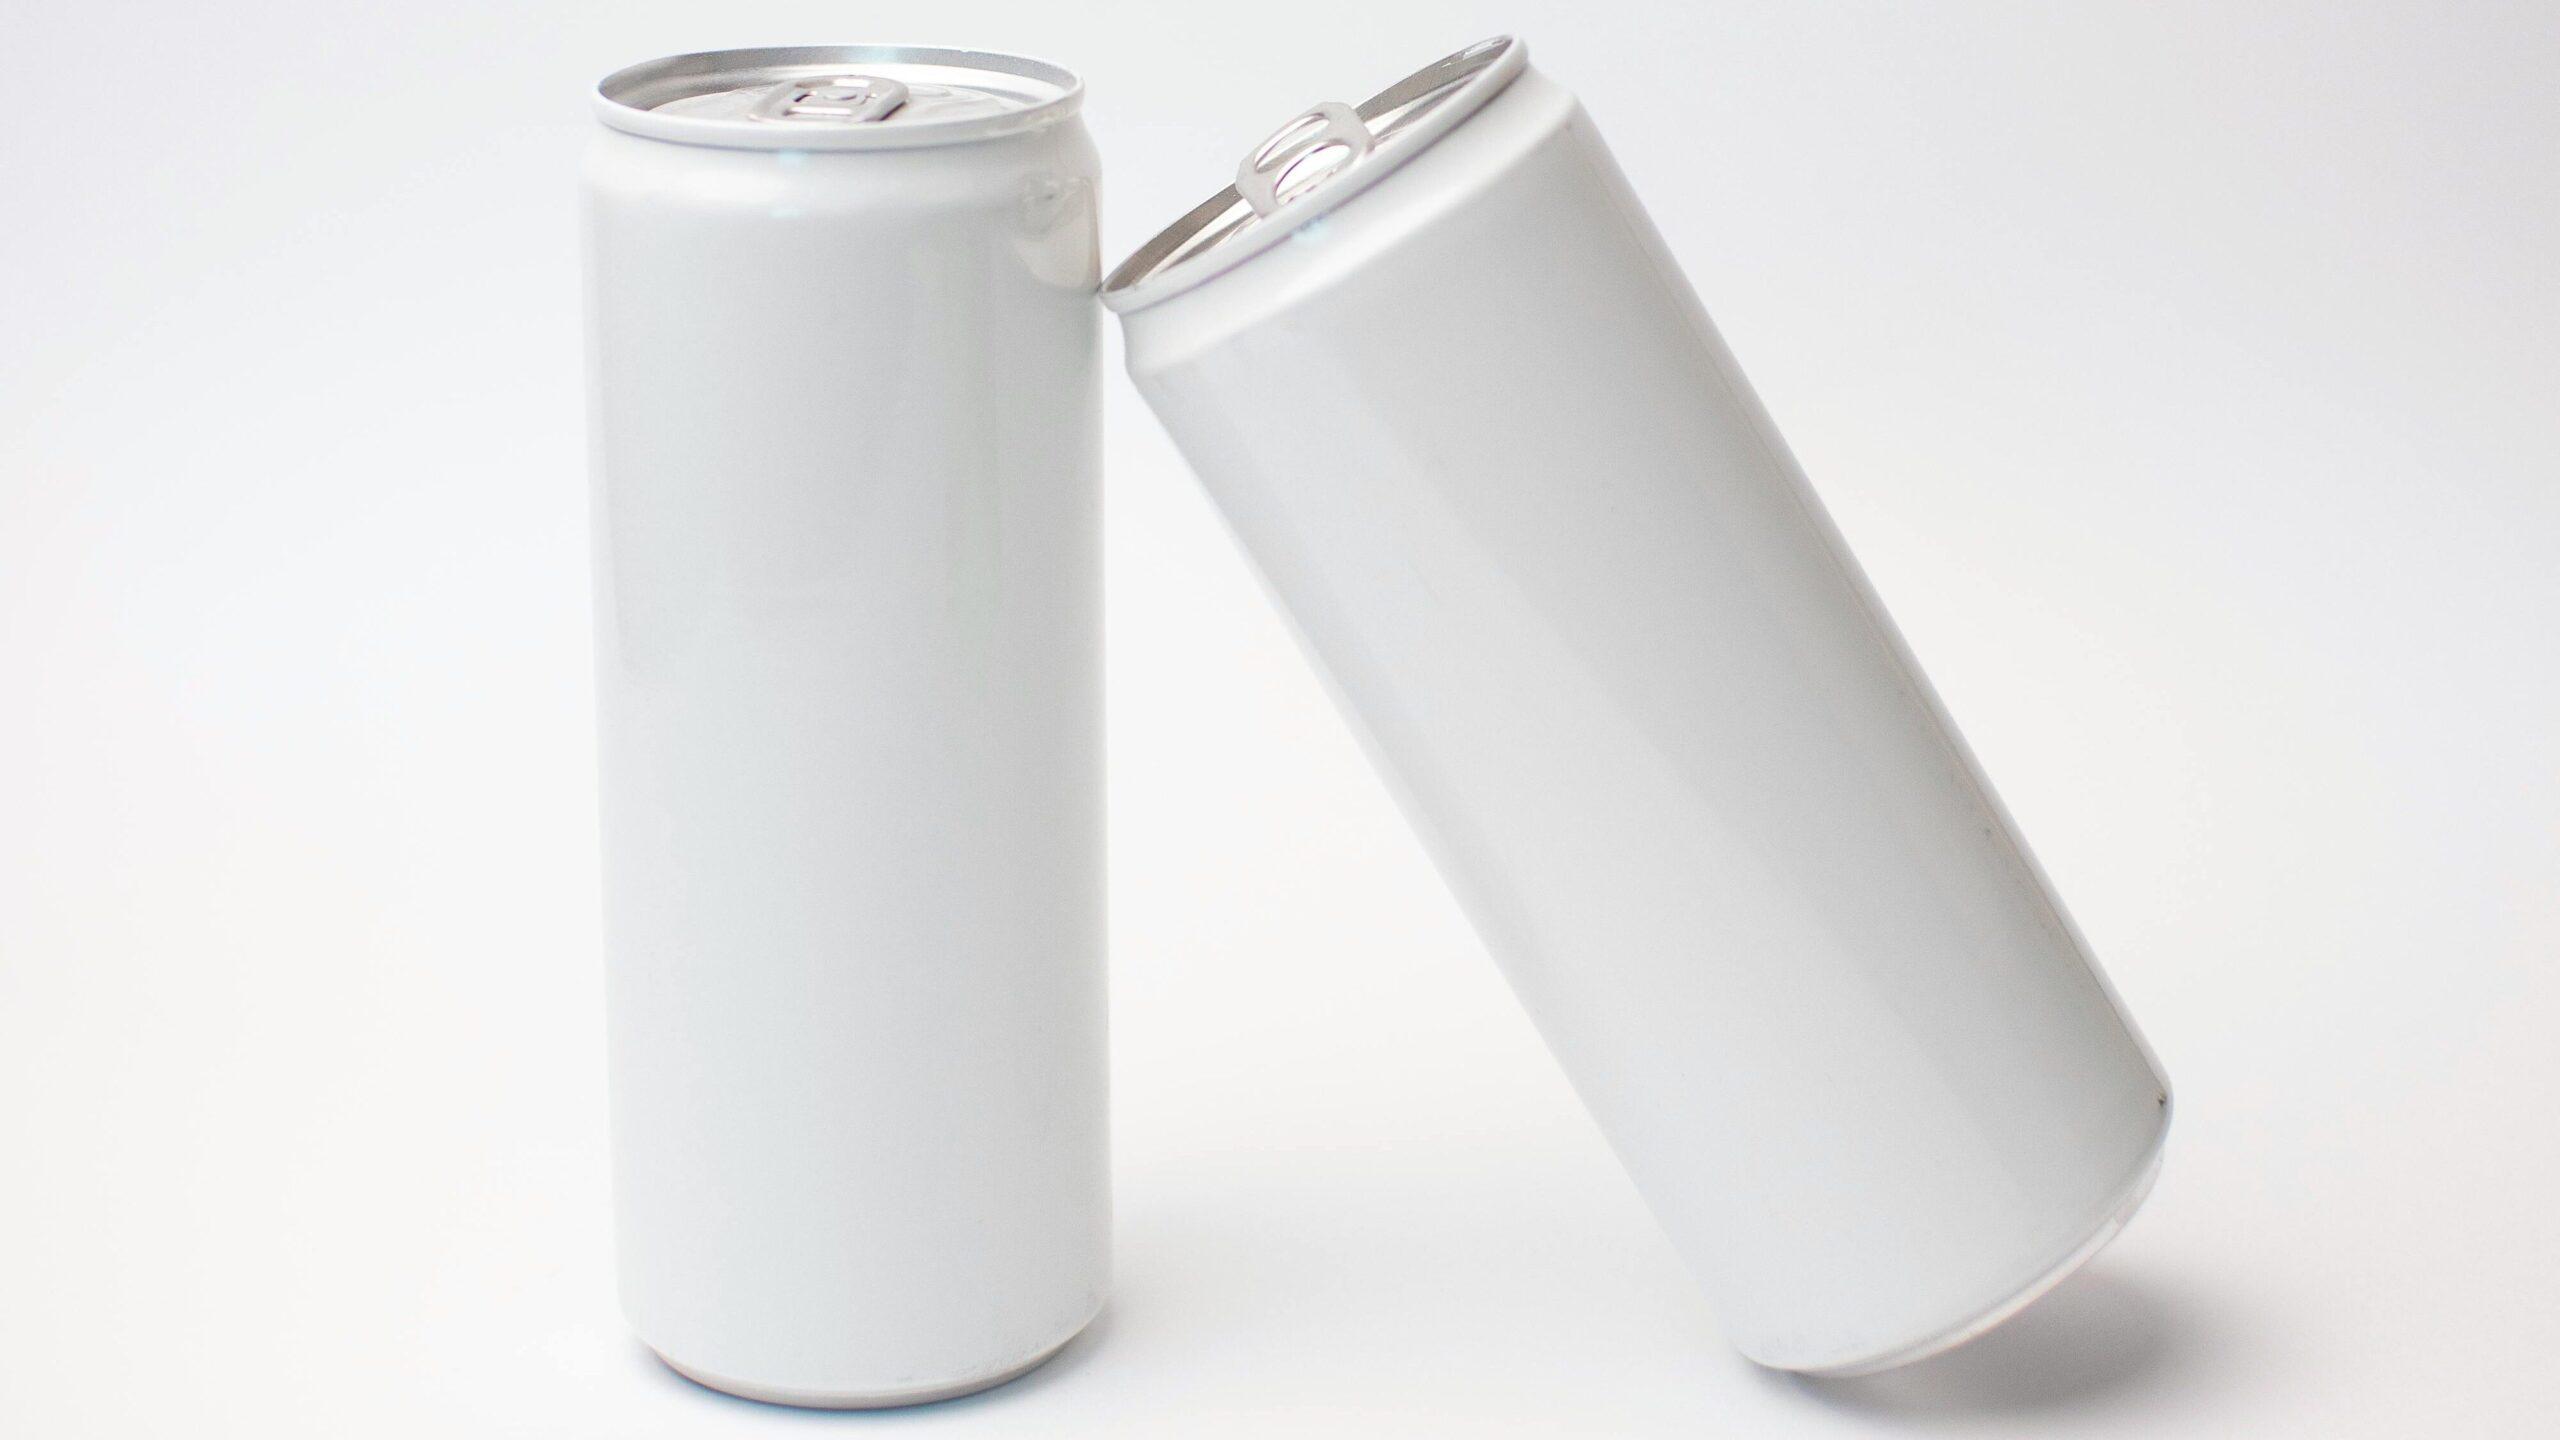 Dos latas blancas, una apoyada sobre la otra